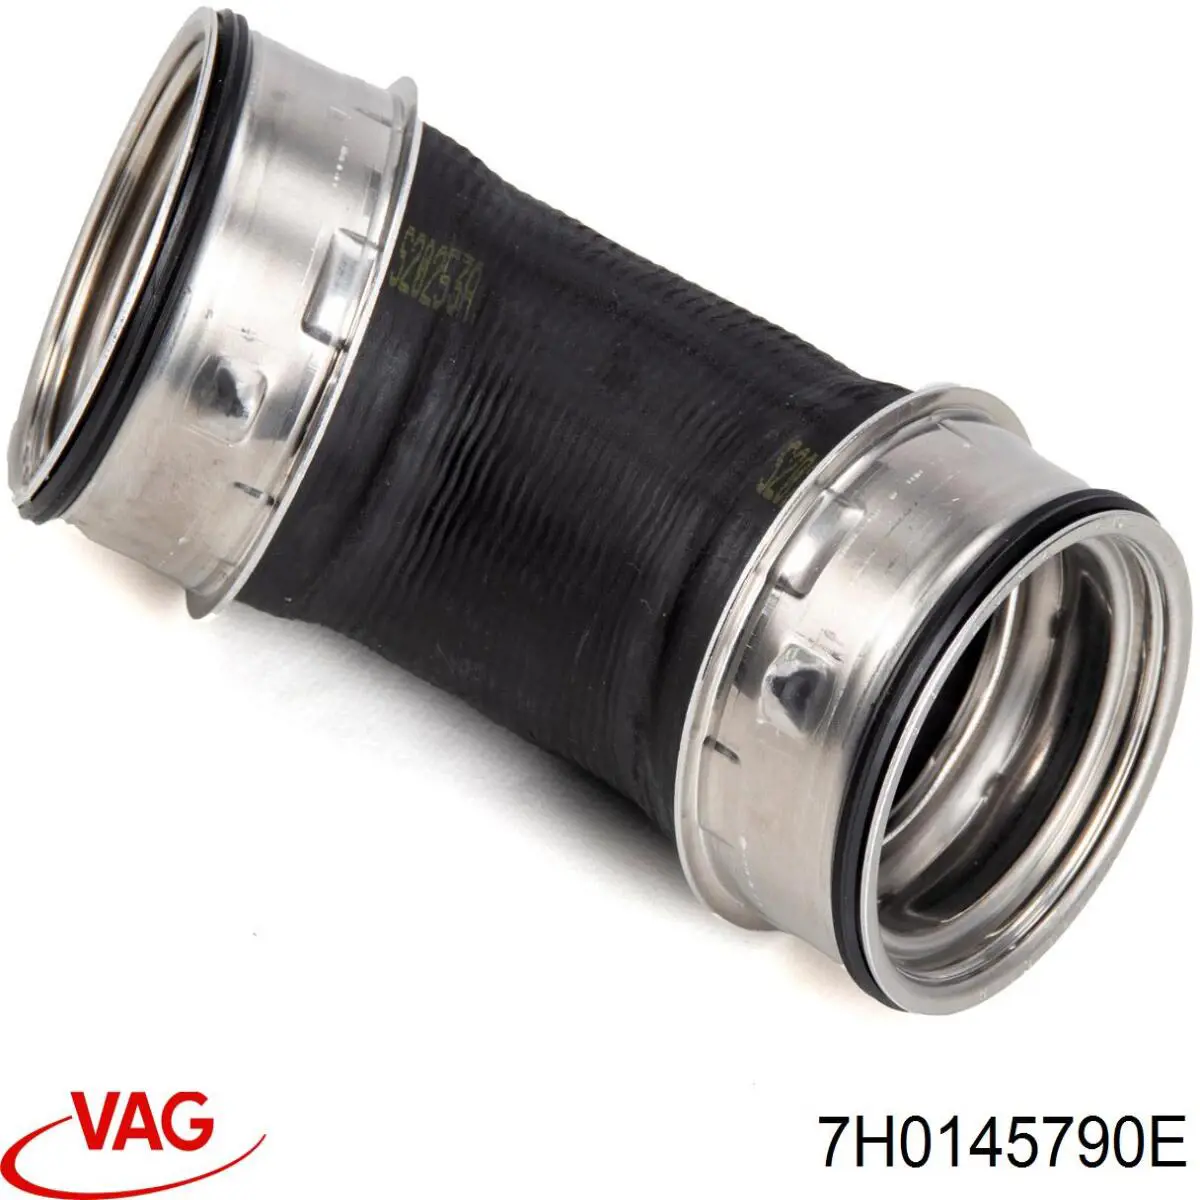 7H0145790E VAG tubo flexible de aire de sobrealimentación izquierdo